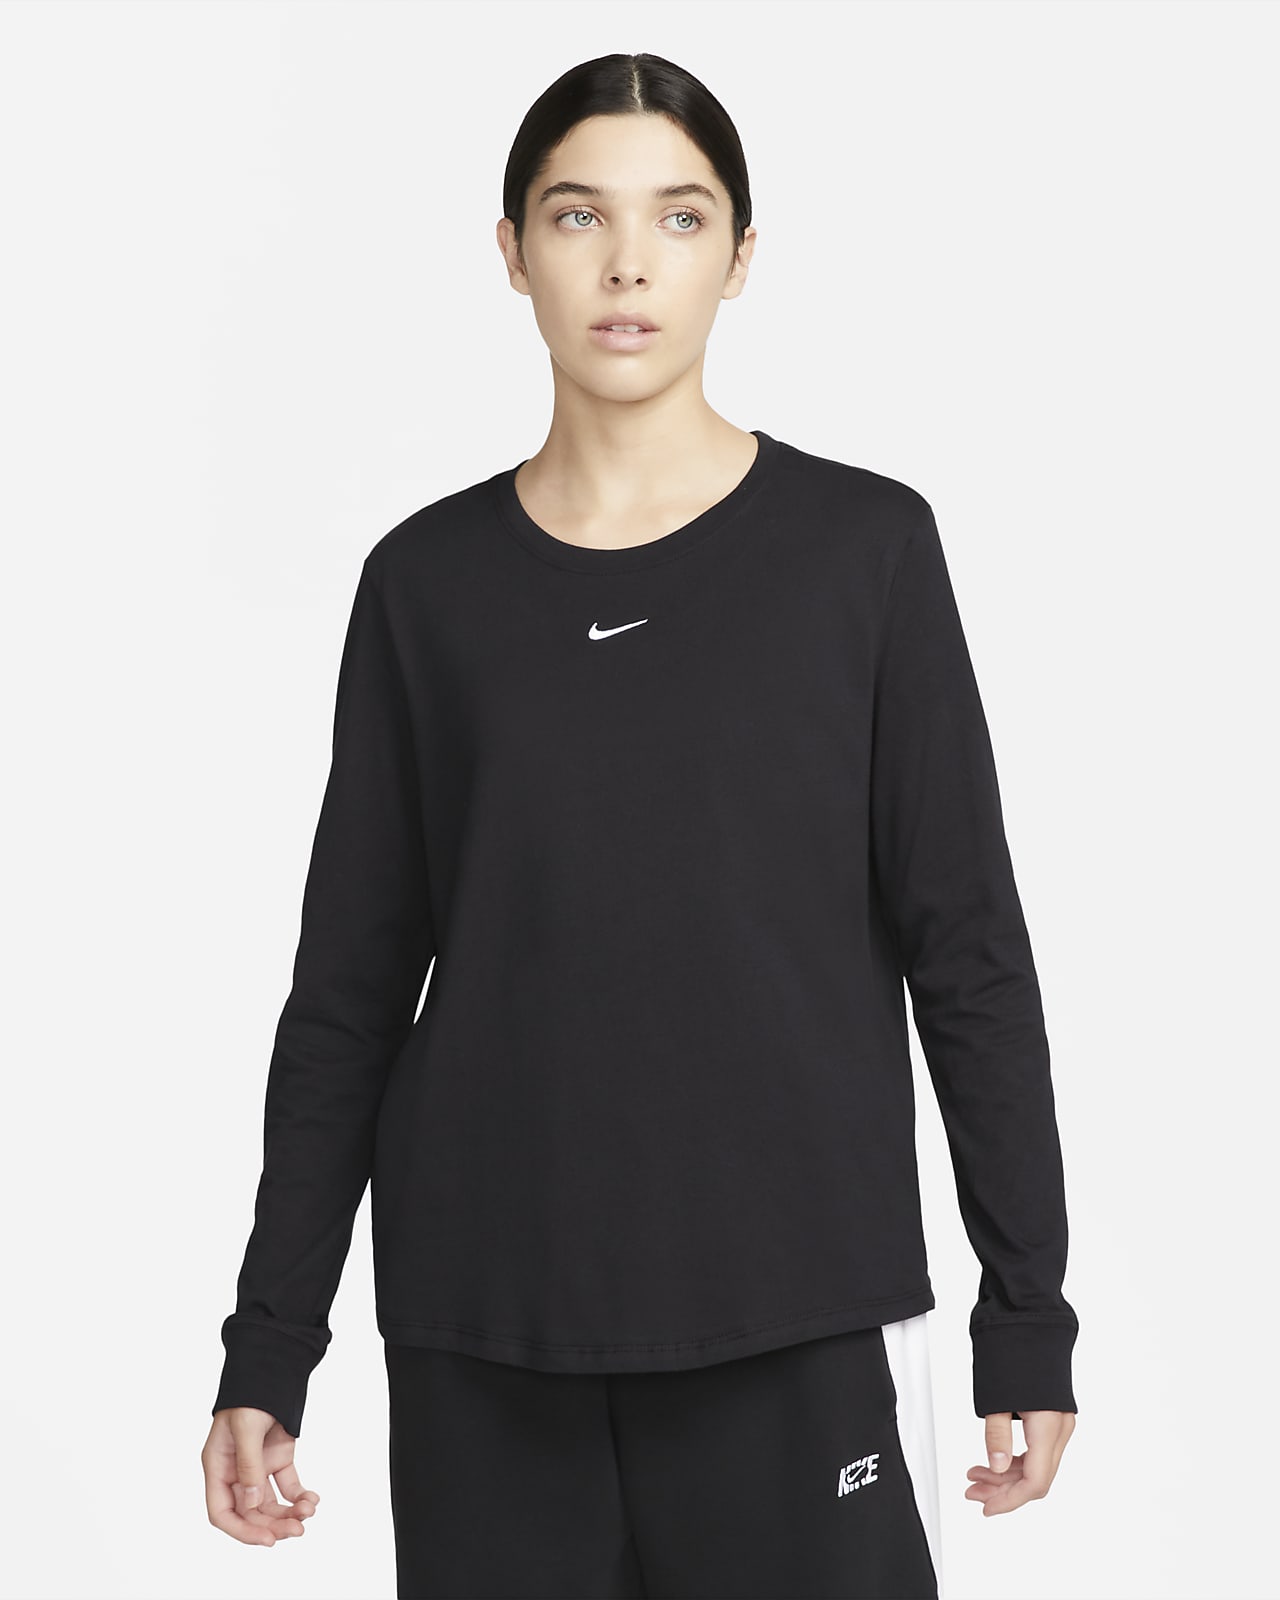 lens had het niet door Verstrooien Nike Sportswear Premium Essentials Women's Long-Sleeve T-Shirt. Nike LU